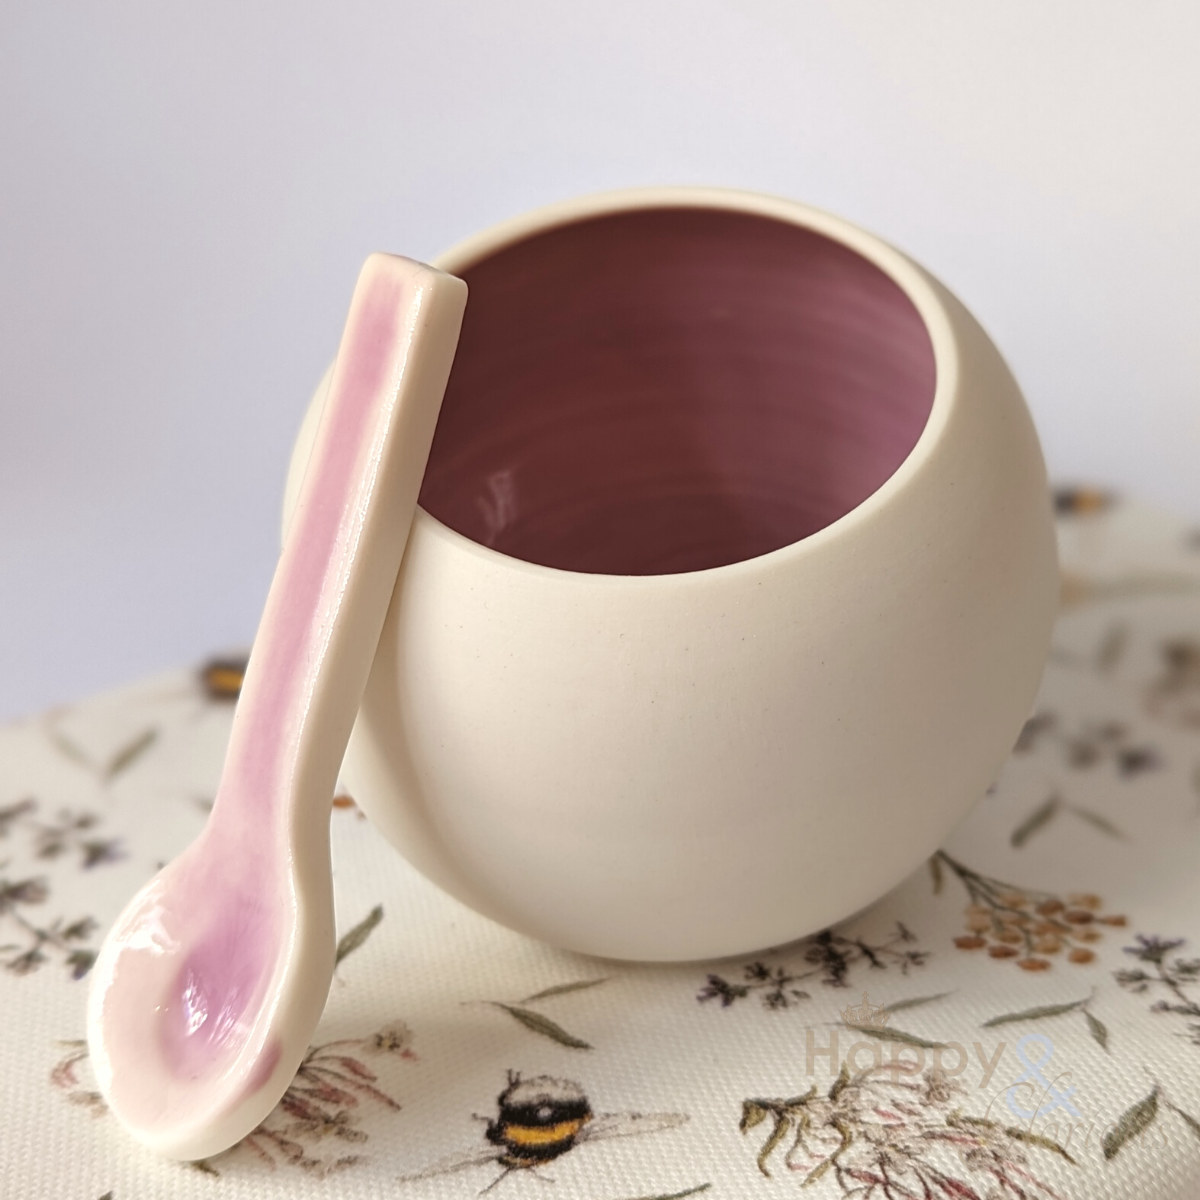 Rose pink porcelain salt pig & spoon